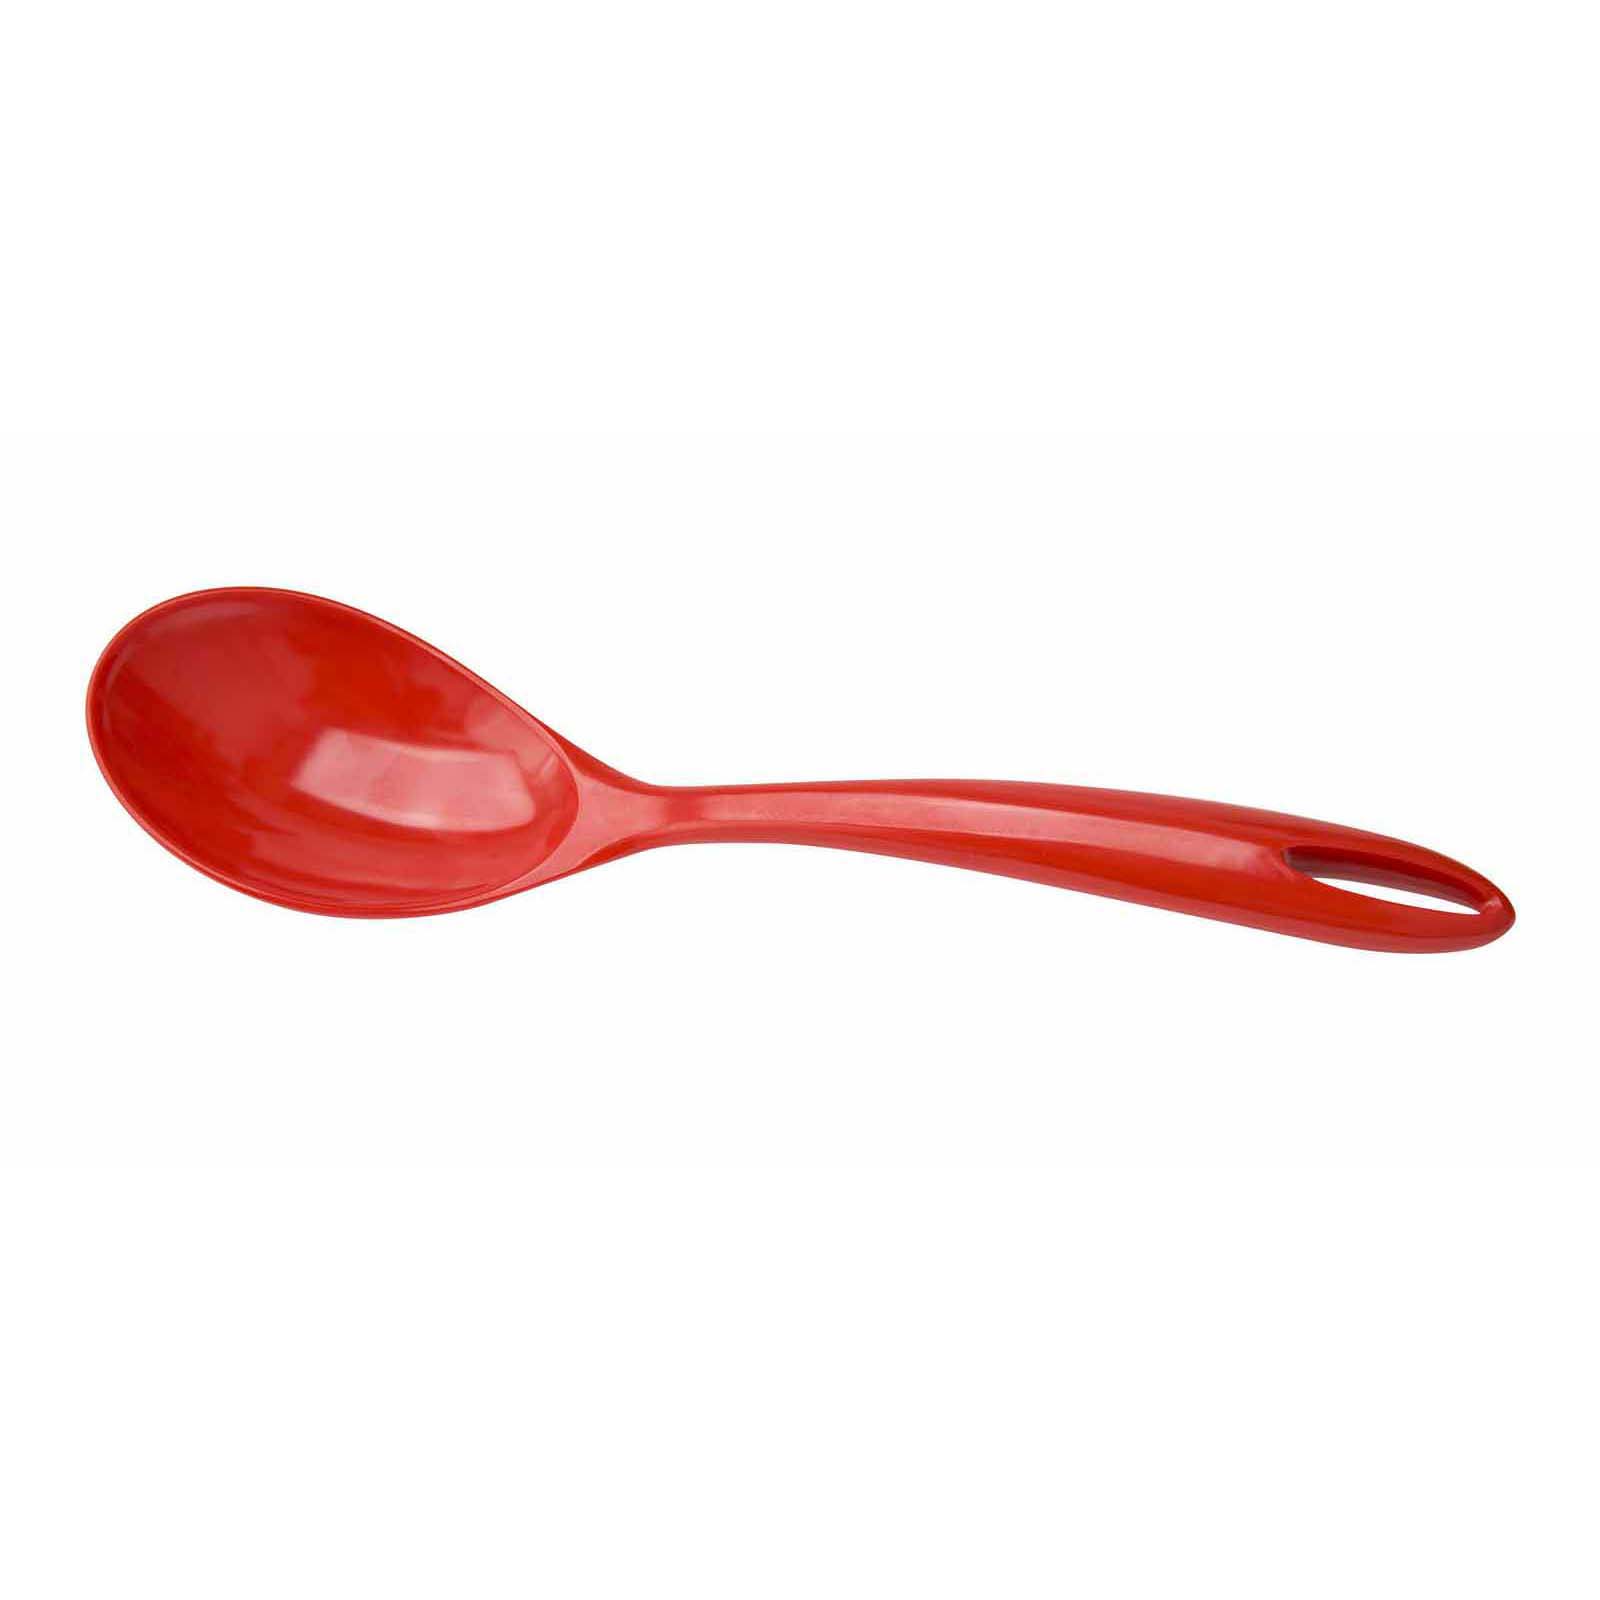 Spoon Splice 12 Inch Kitchen Spoon